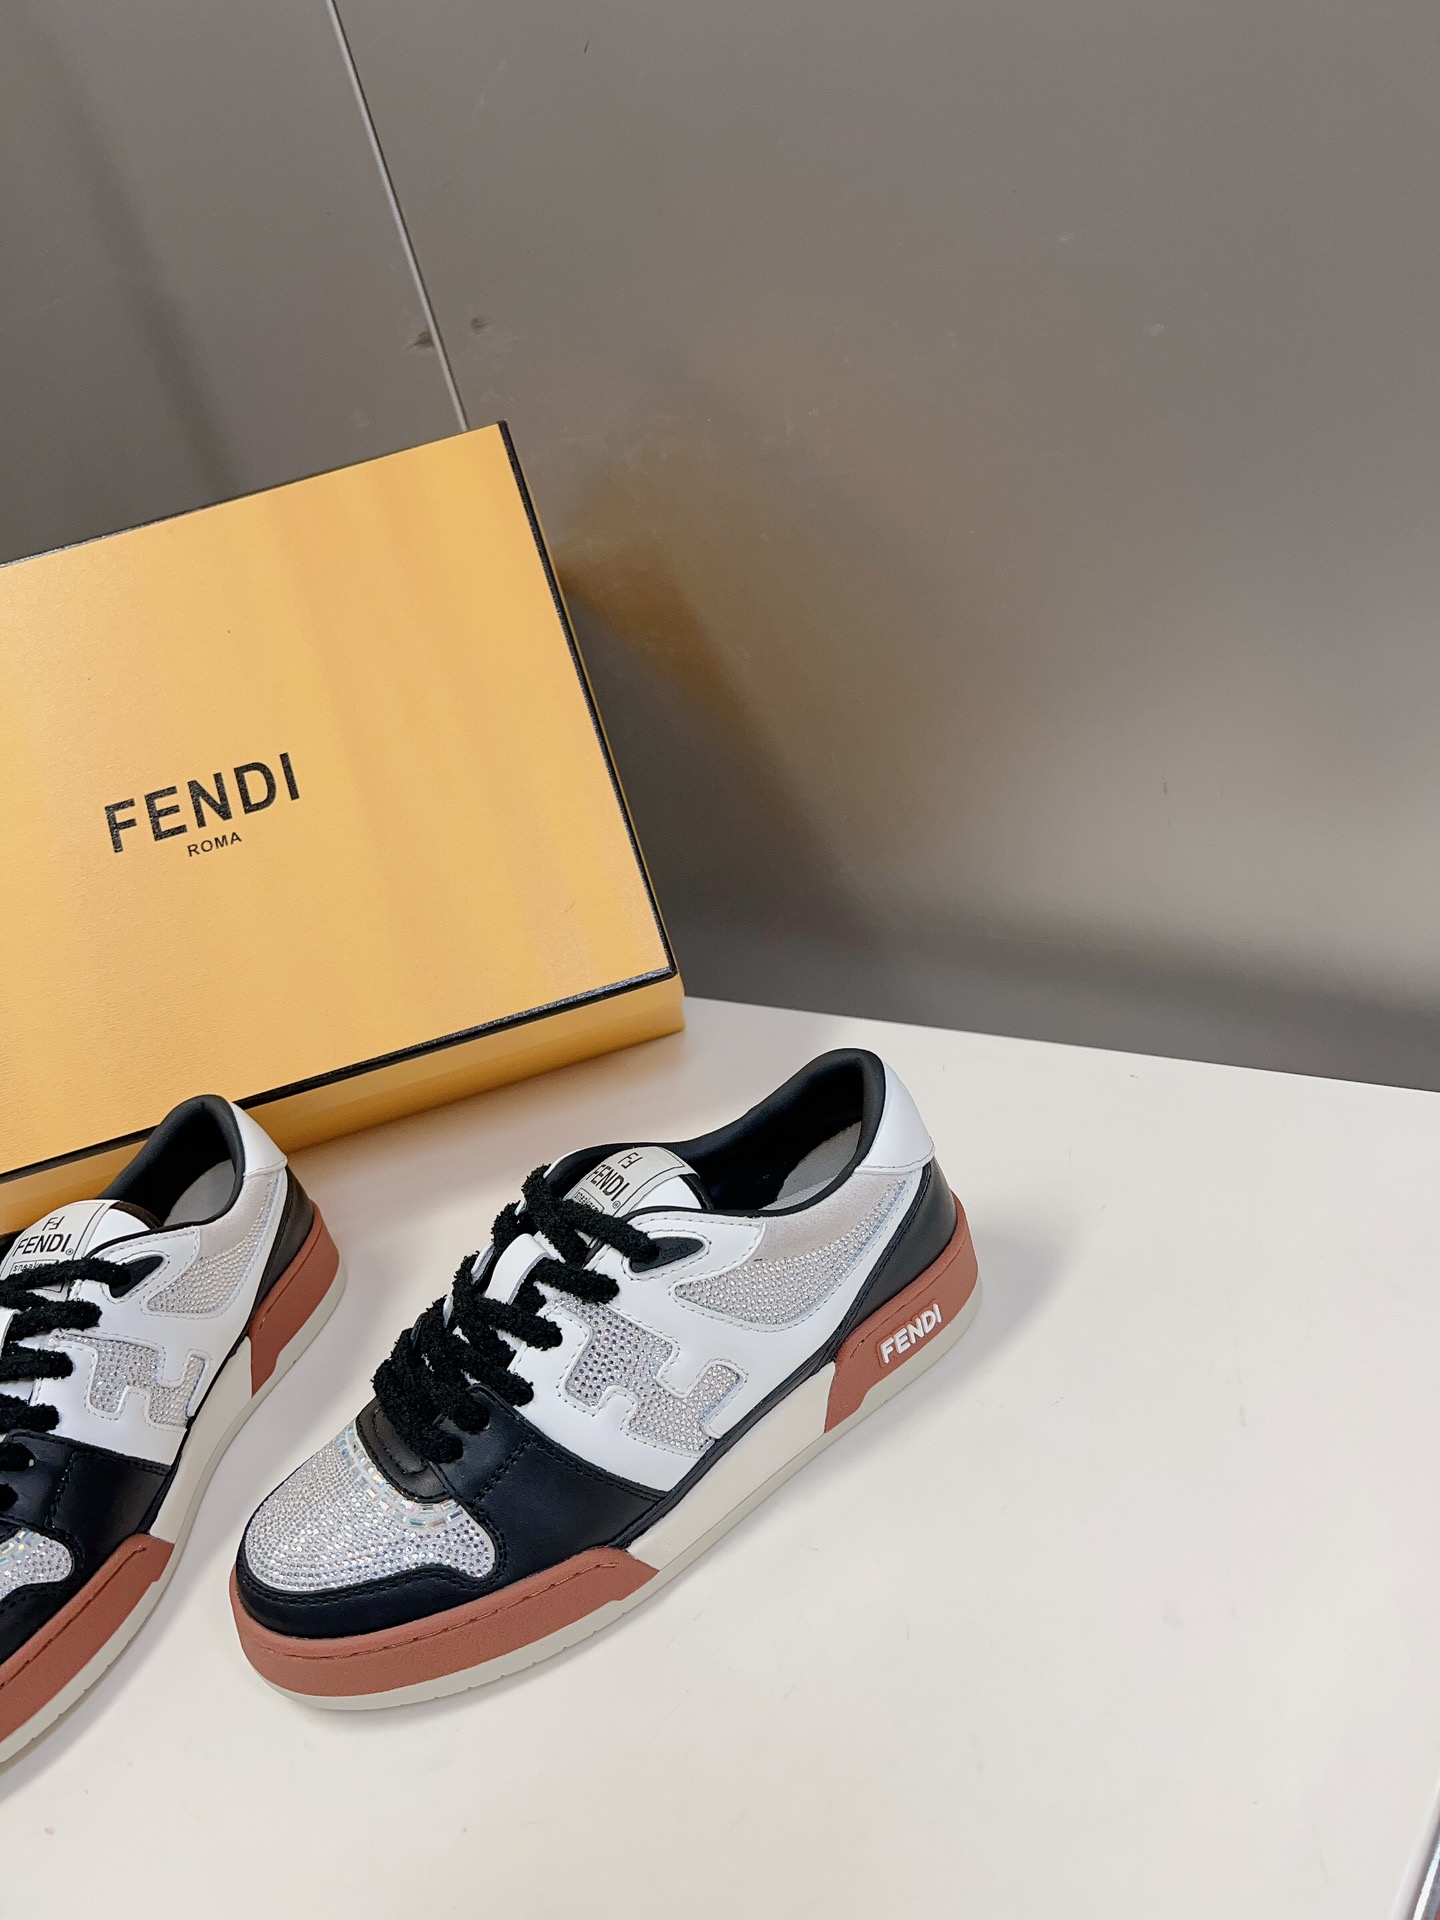 男装10Fendi芬迪爆款系列情侣休闲运动鞋FDmatch原版7200购入一比一复刻设计师KimJone